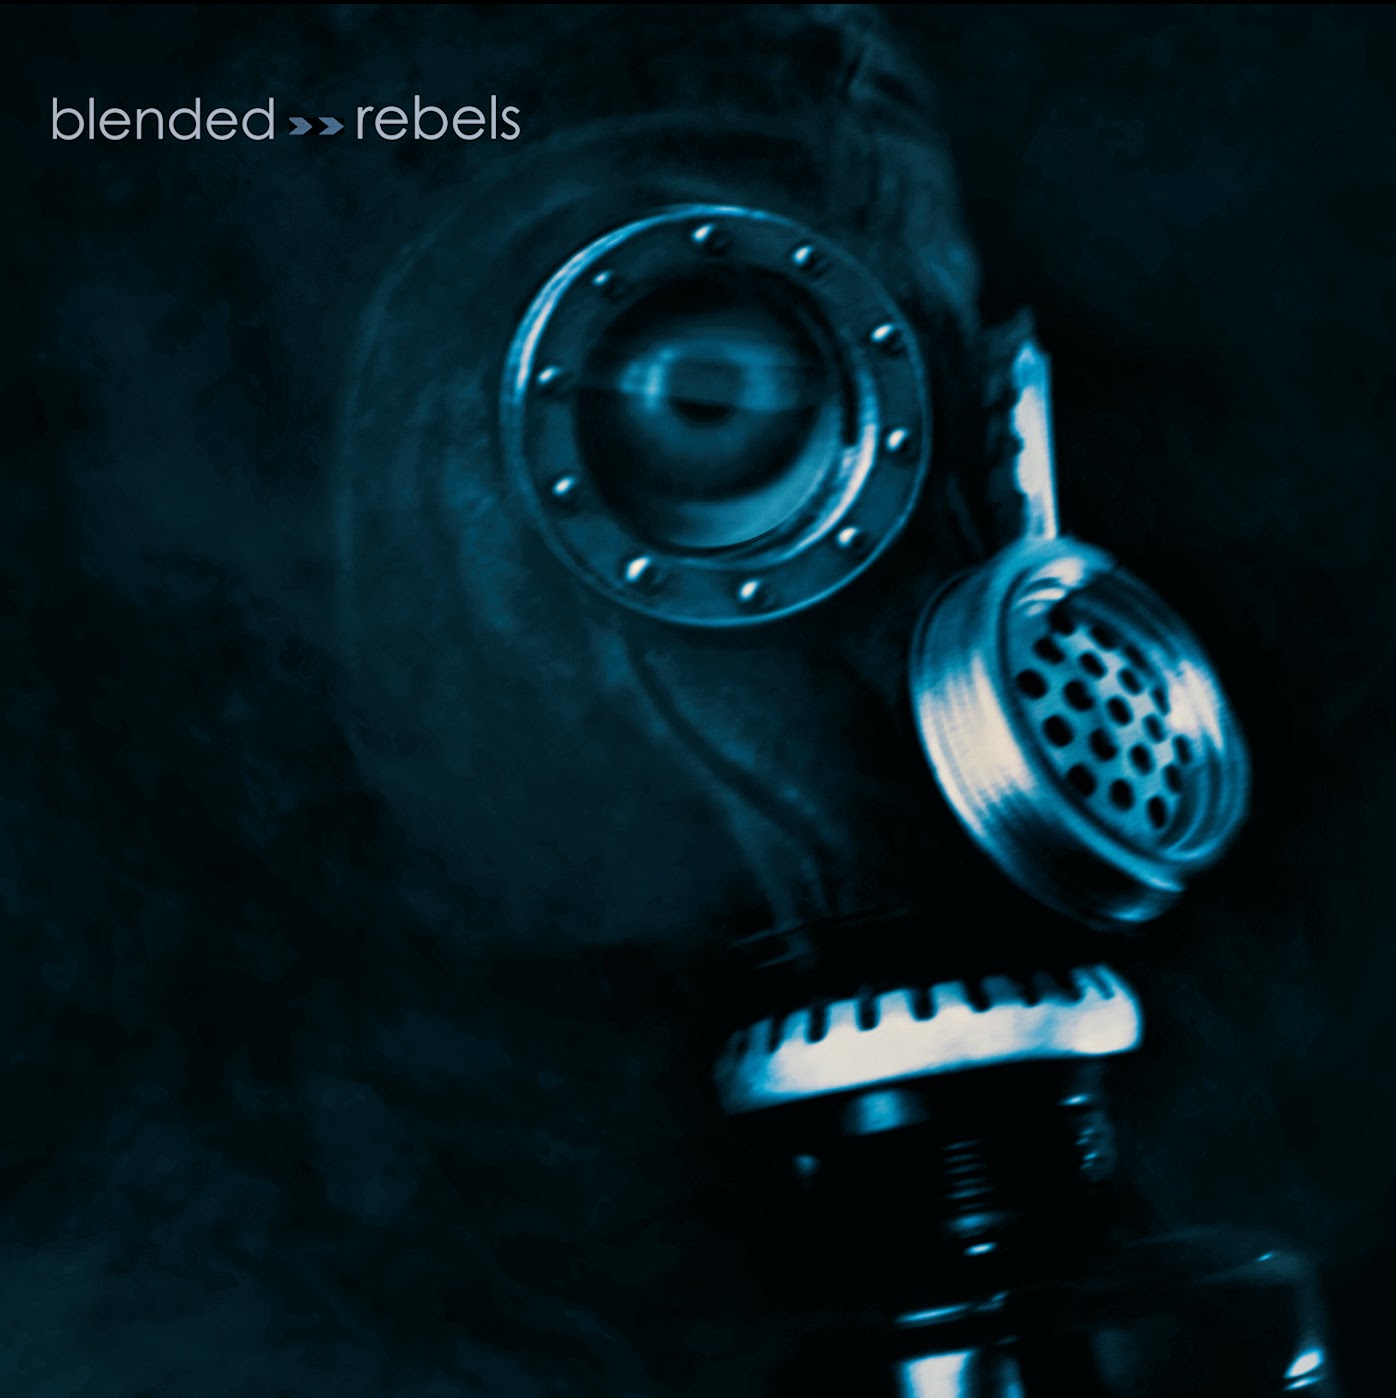 https://soundcloud.com/f3rnandrum/sets/blended-rebels2013